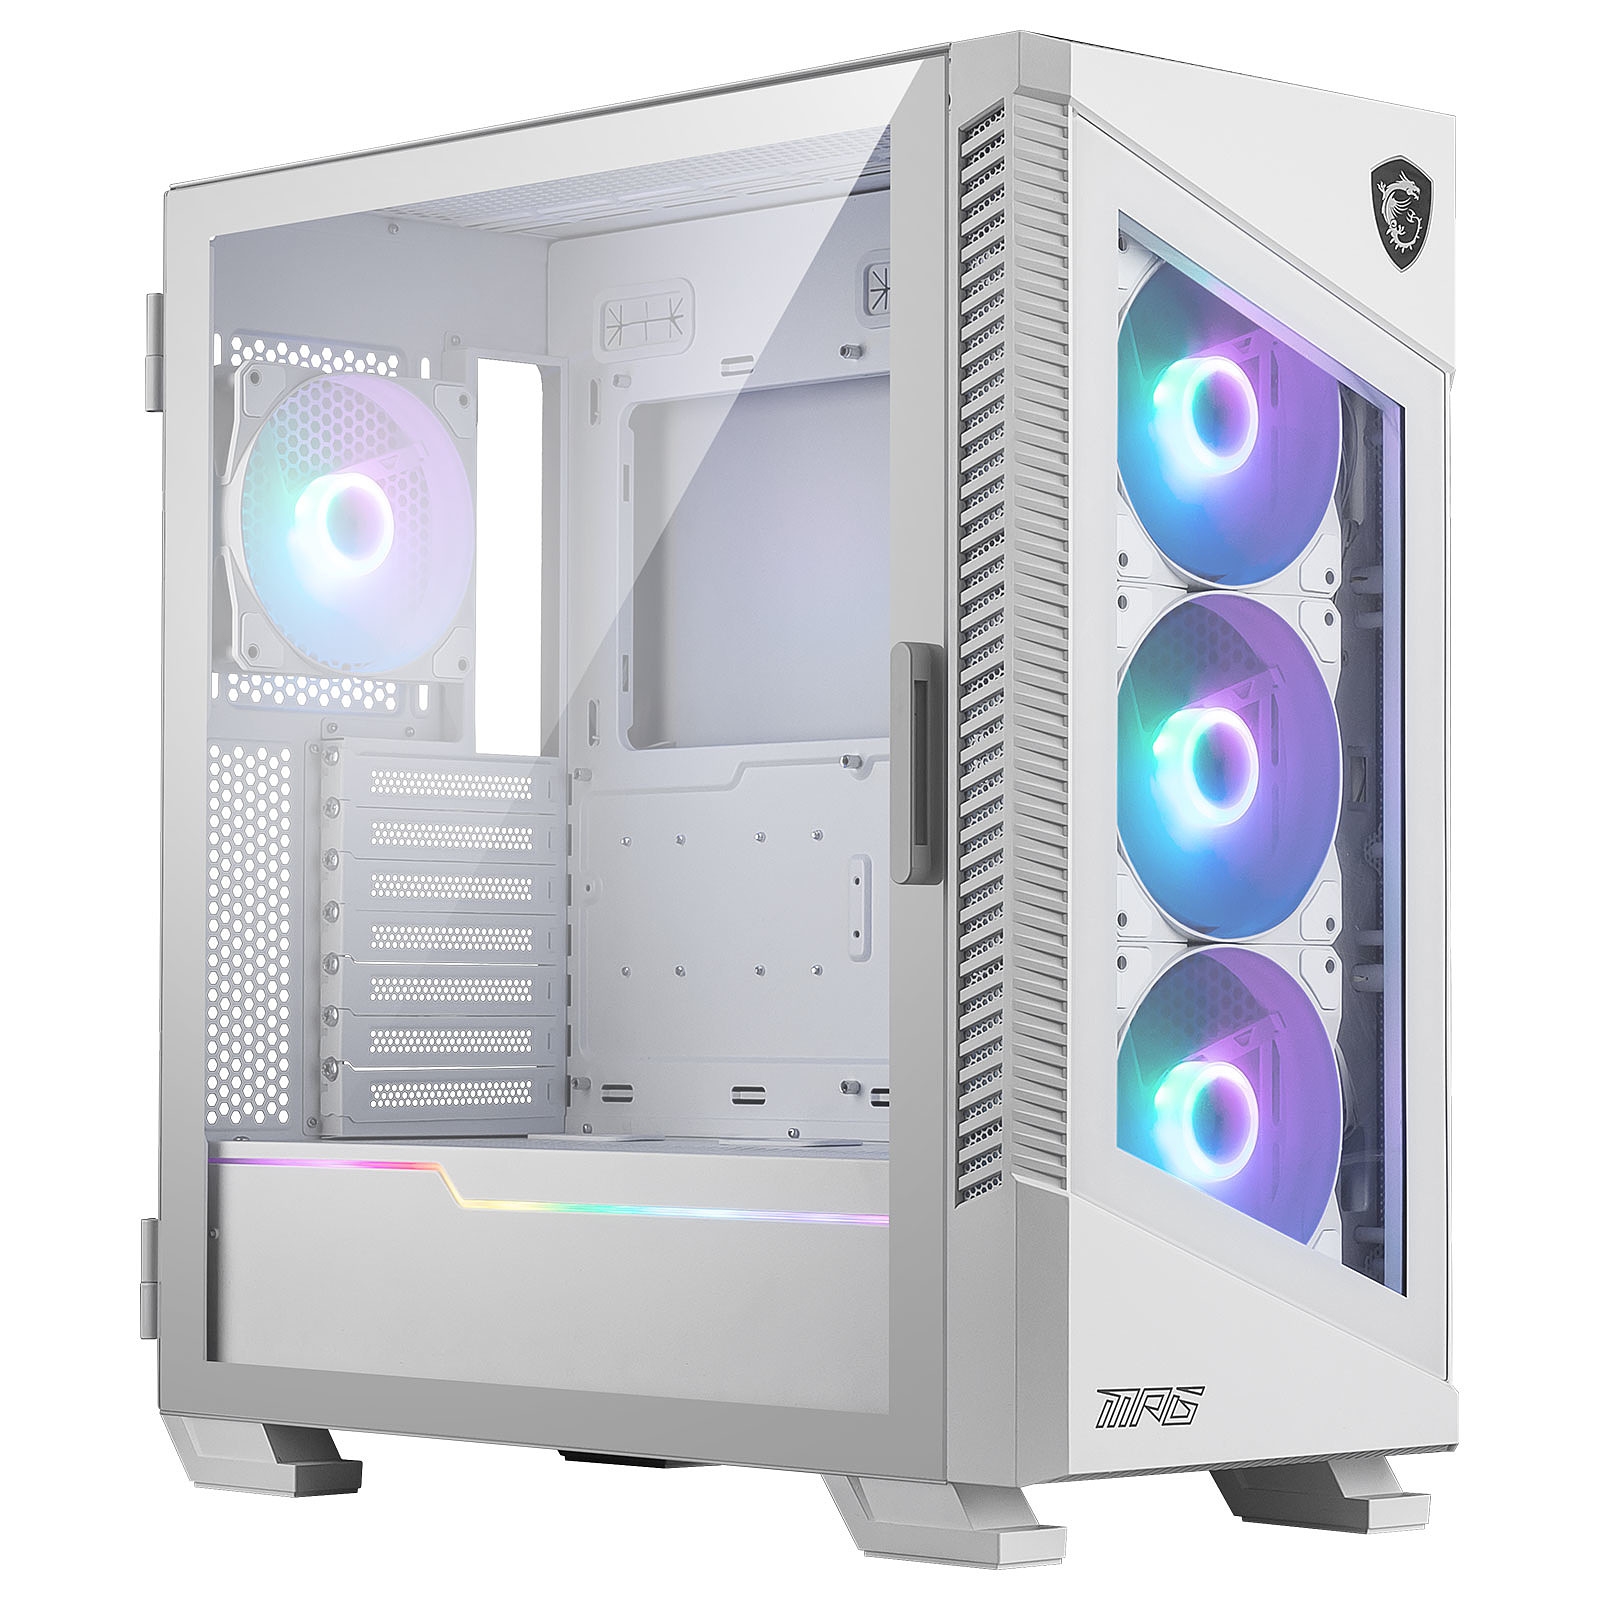  Case Computer Desktop Atx Msi Mpg Velox 100r Bianco Multicolore